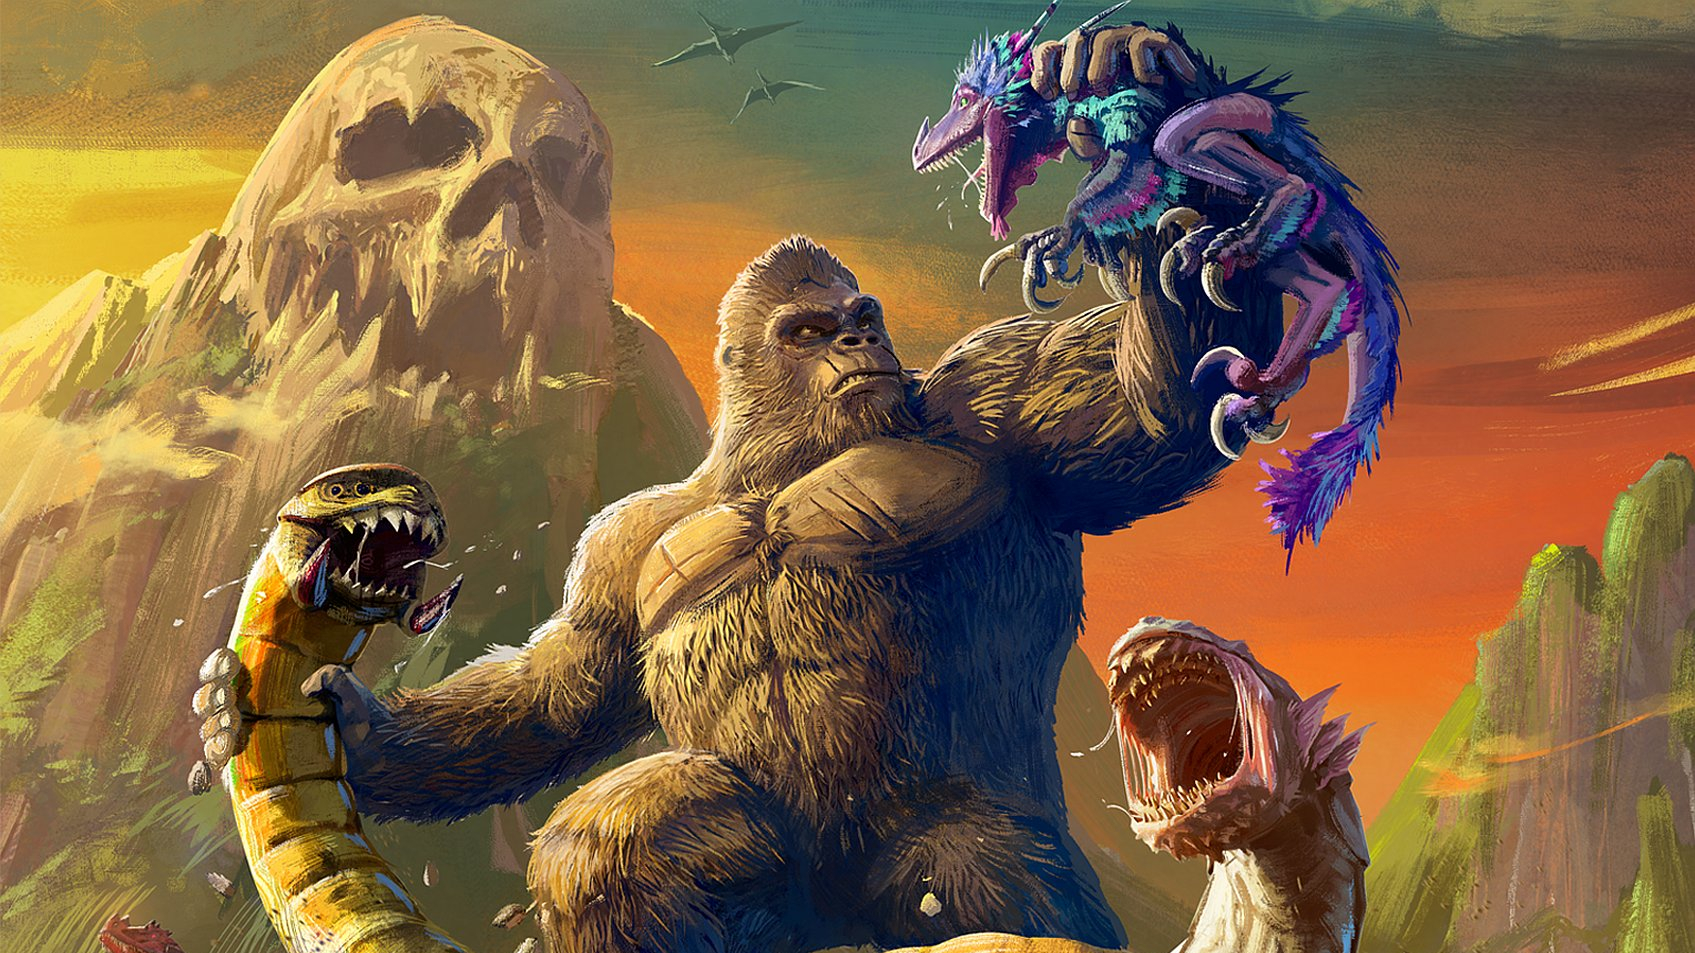 Официальный трейлер Skull Island: Rise of Kong — экшена про Кинг-Конга